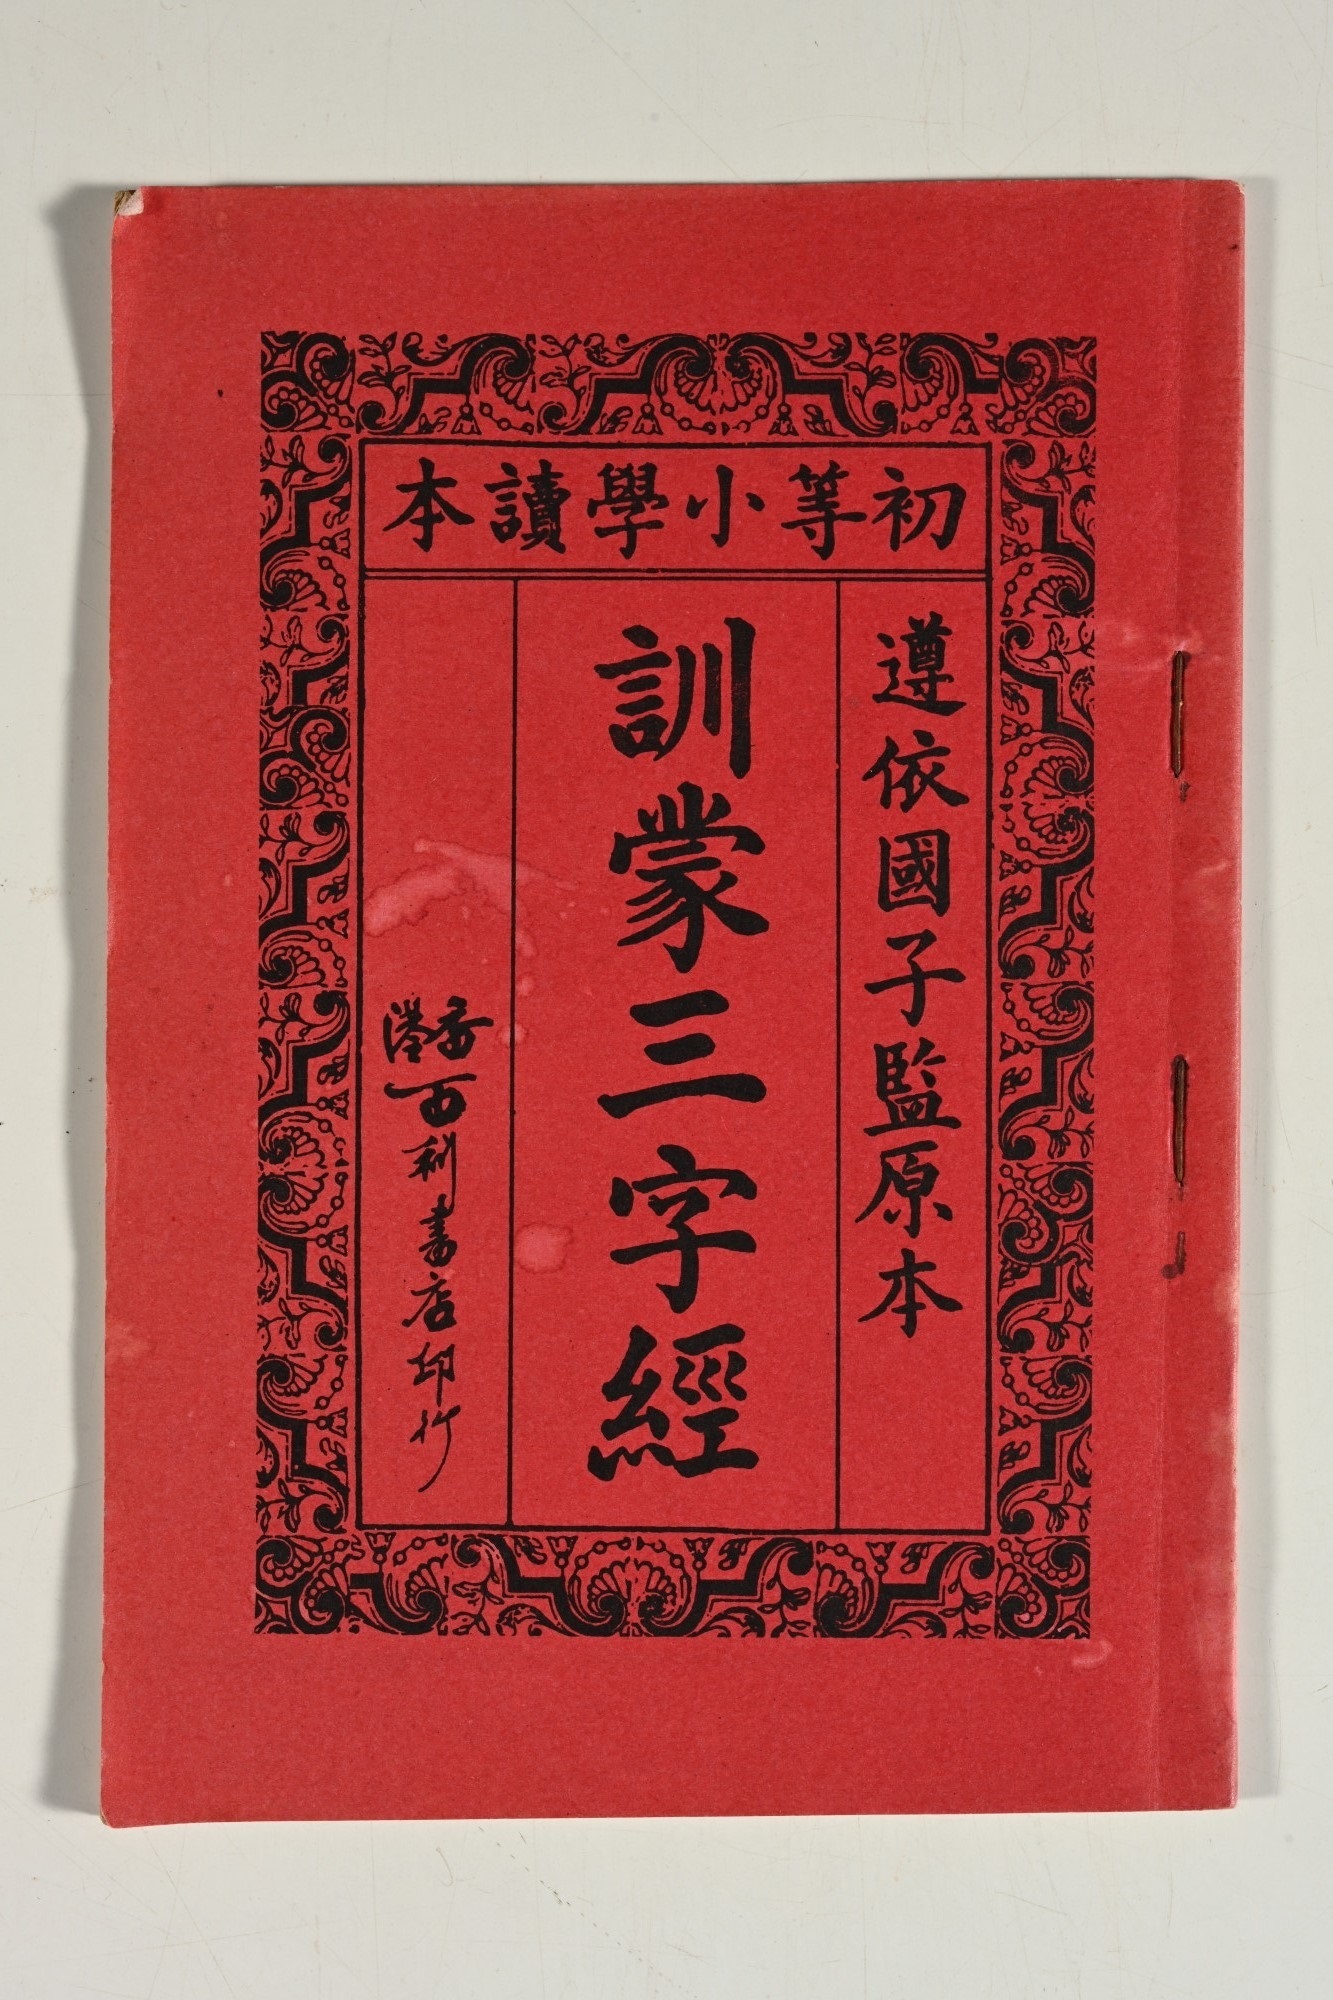 1930年代香港百利書店印行的《訓蒙三字經》<br>鍾燕齊先生藏品